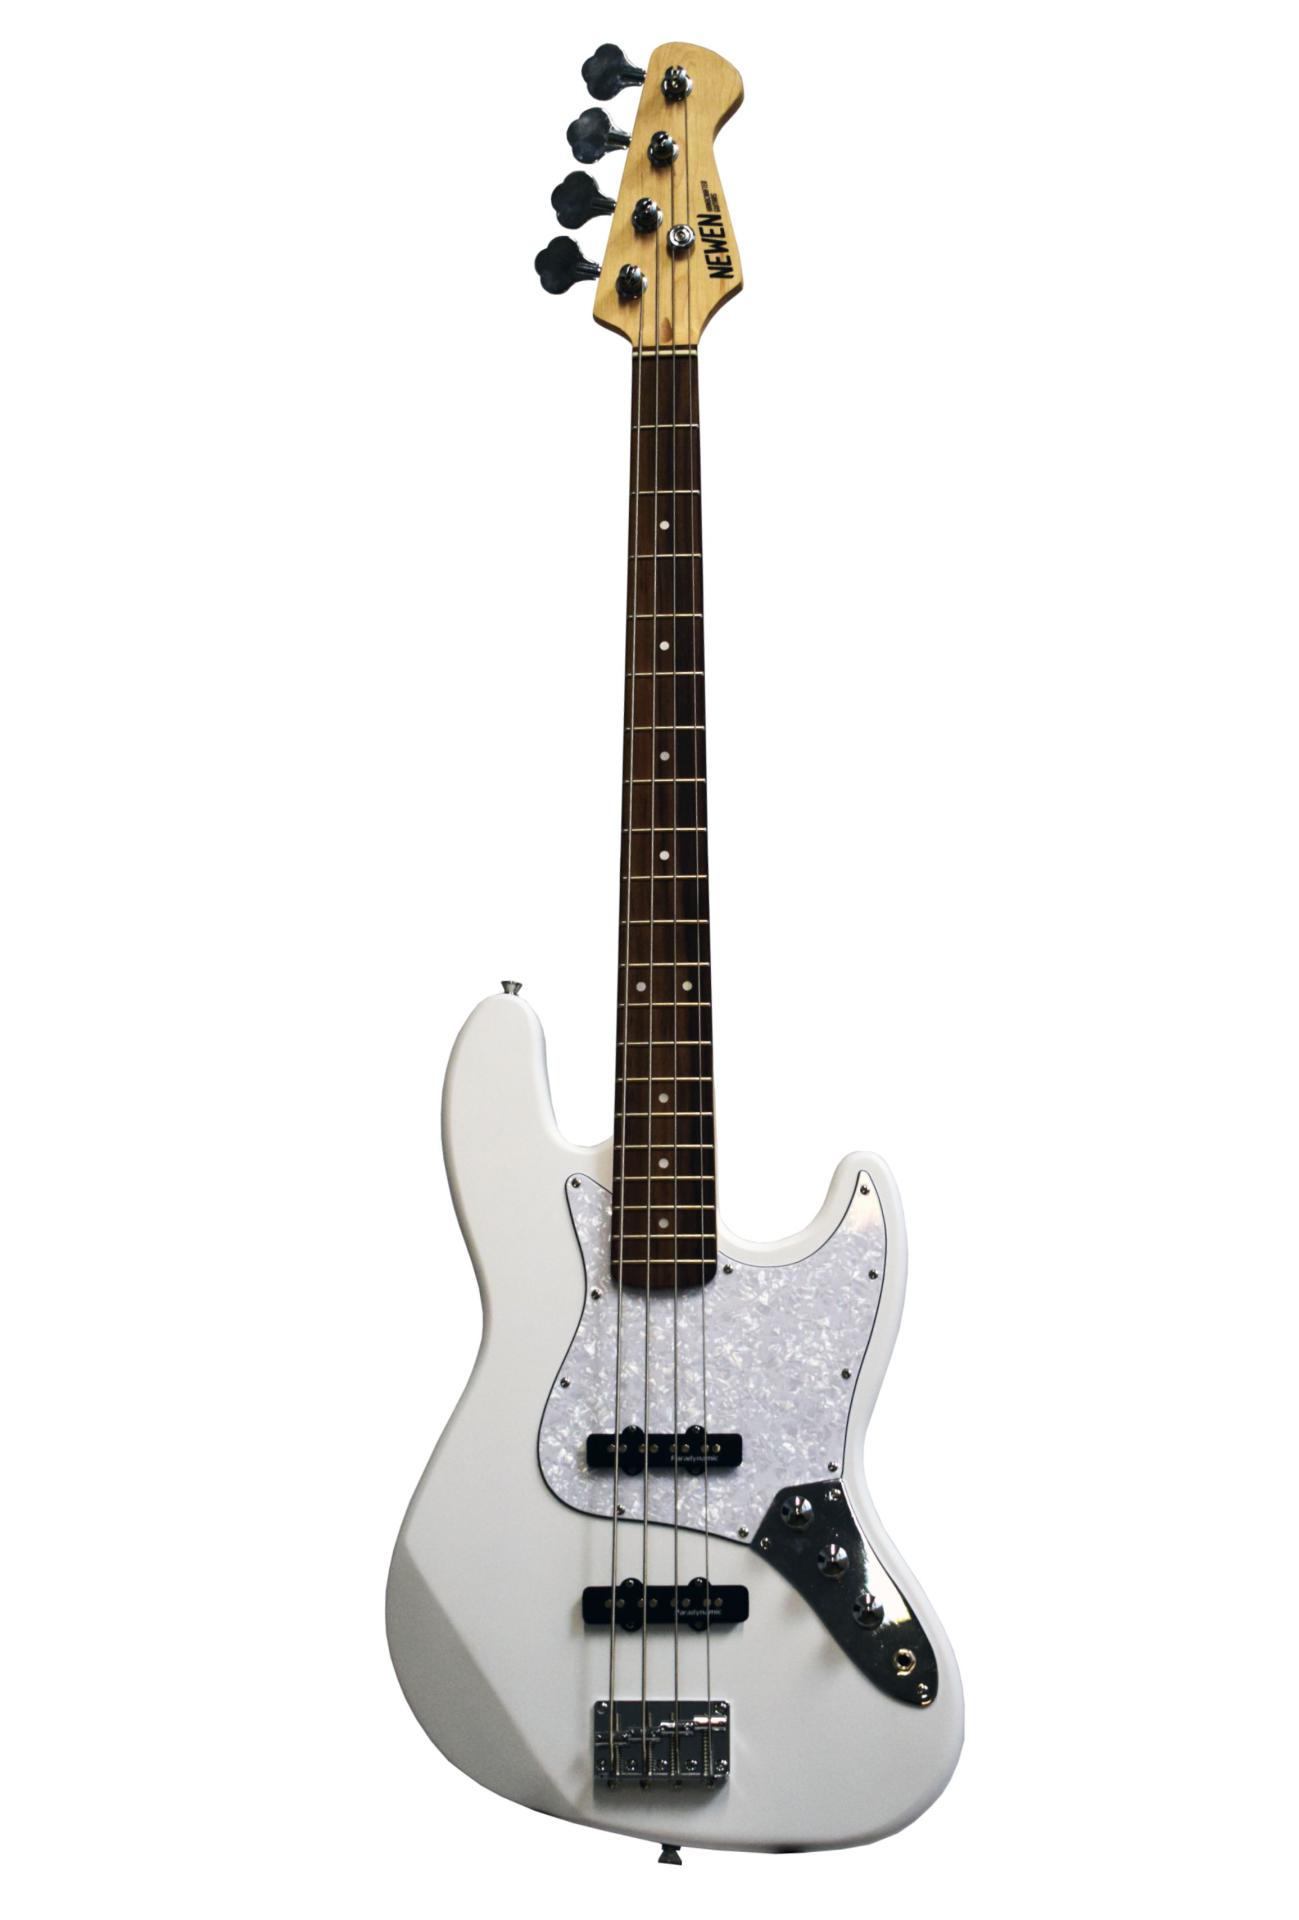 NEWEN JB-WT White - Gitara basowa model Jazz Bass w kolorze białym